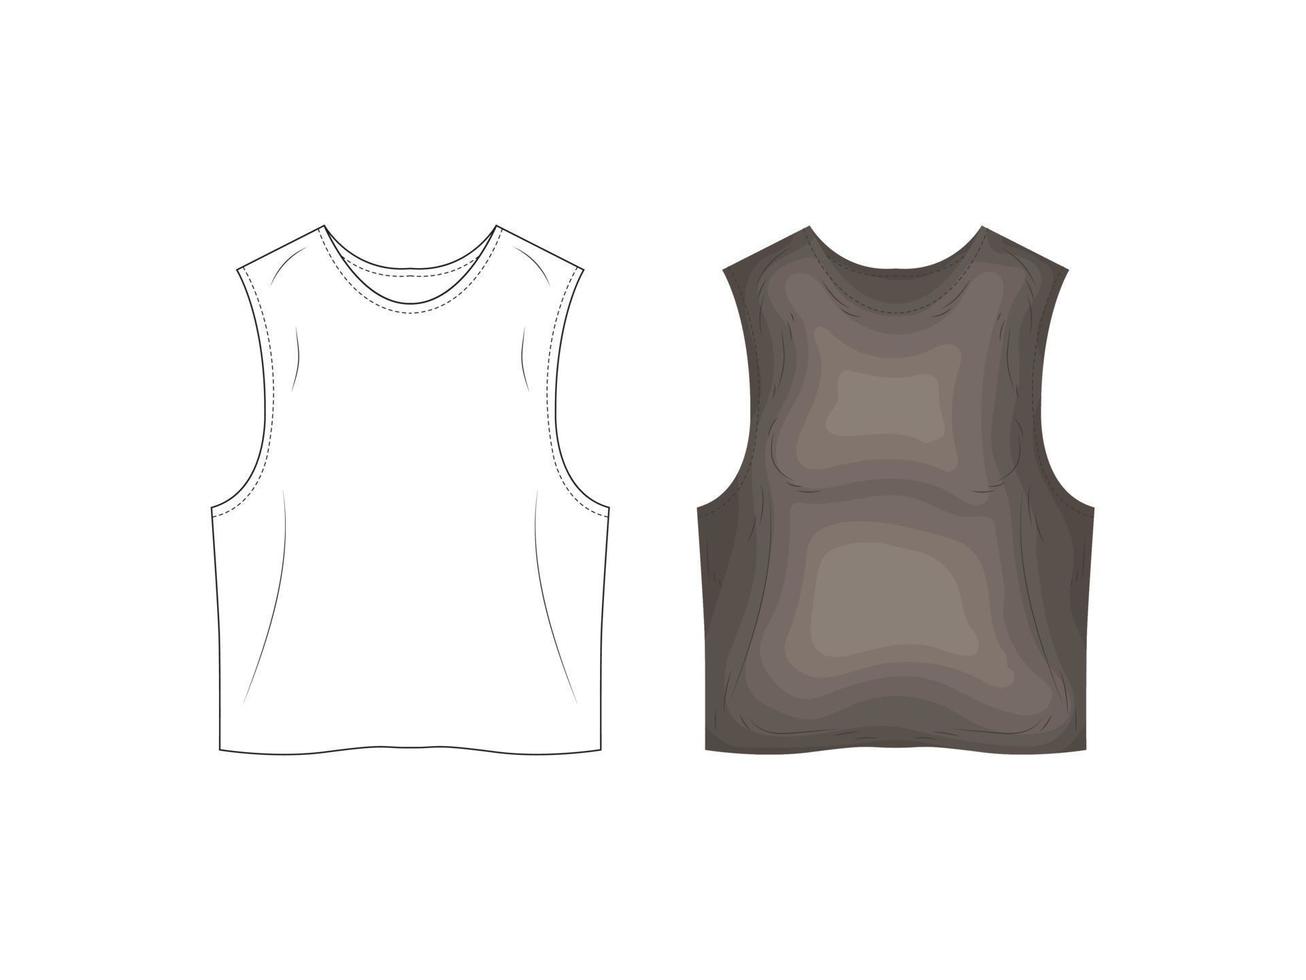 catalogue de produits de mode uniformes maquette croquis illustration vectorielle silhouette de vêtements vecteur